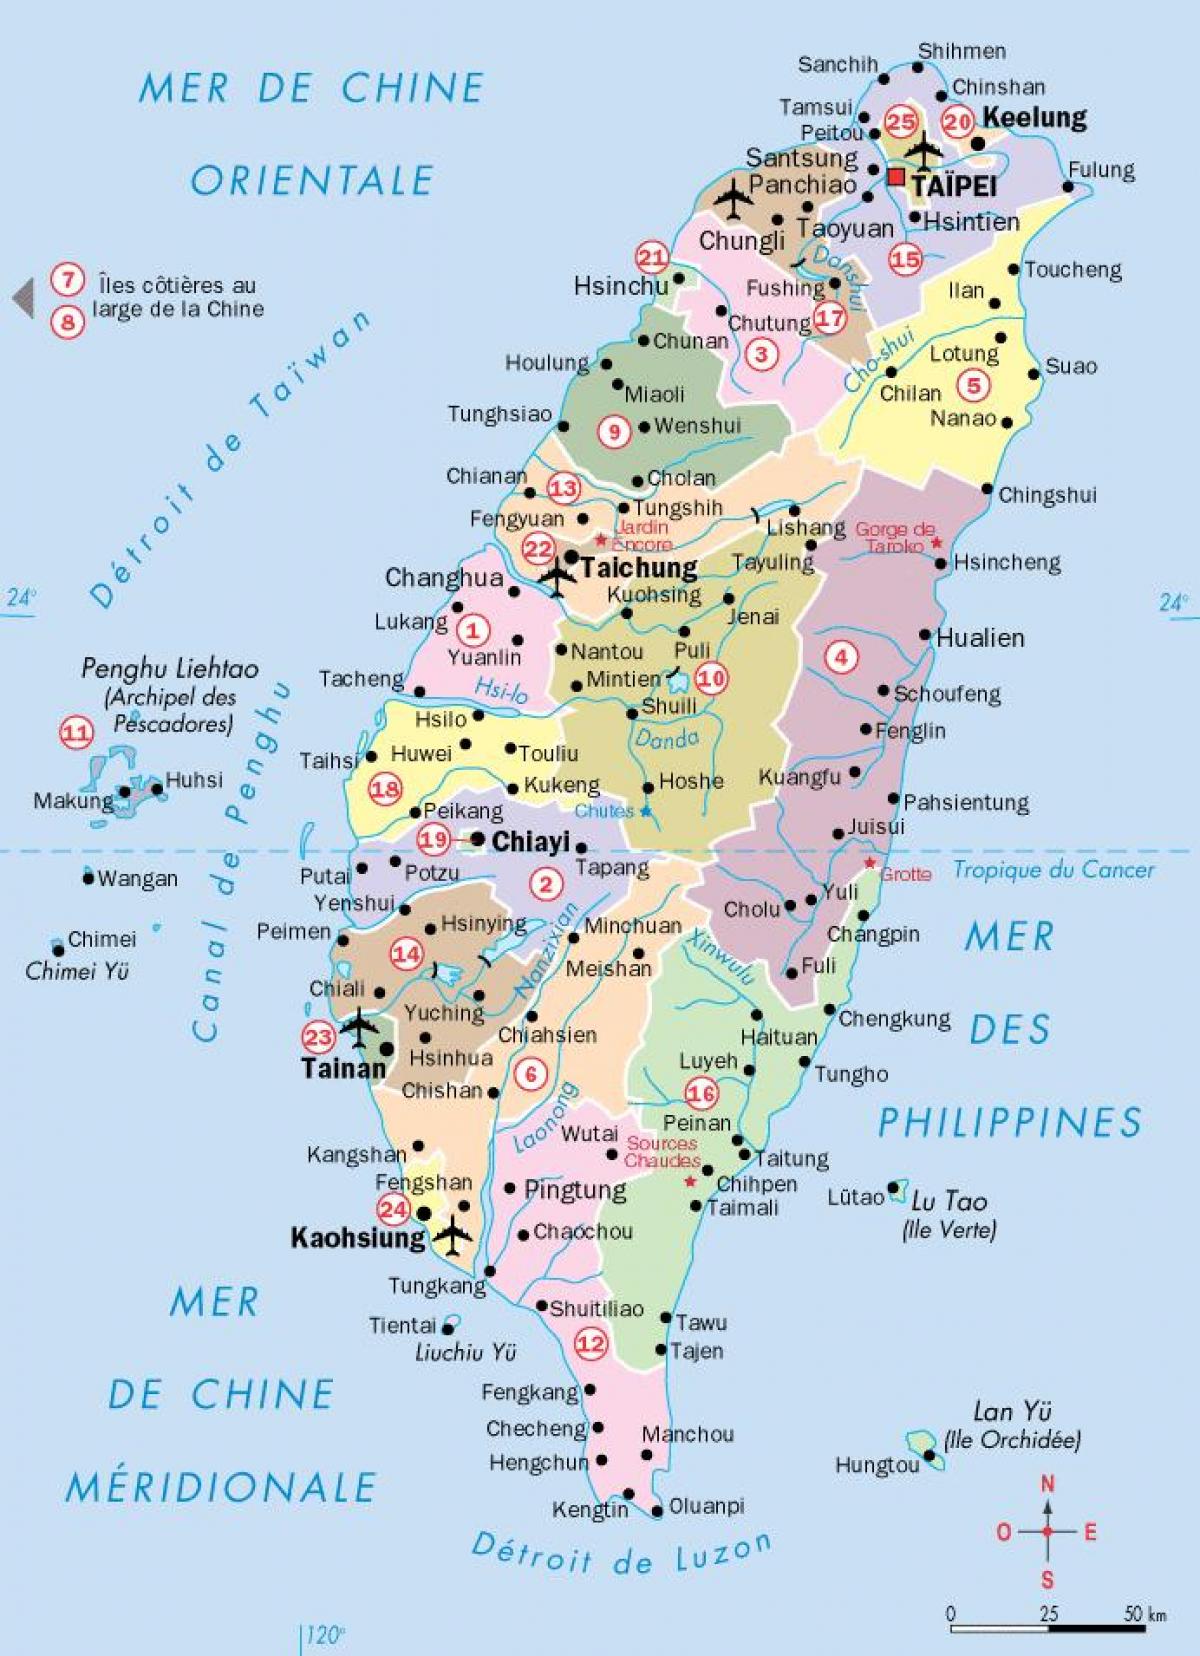 नक्शे के साथ ताइवान शहरों